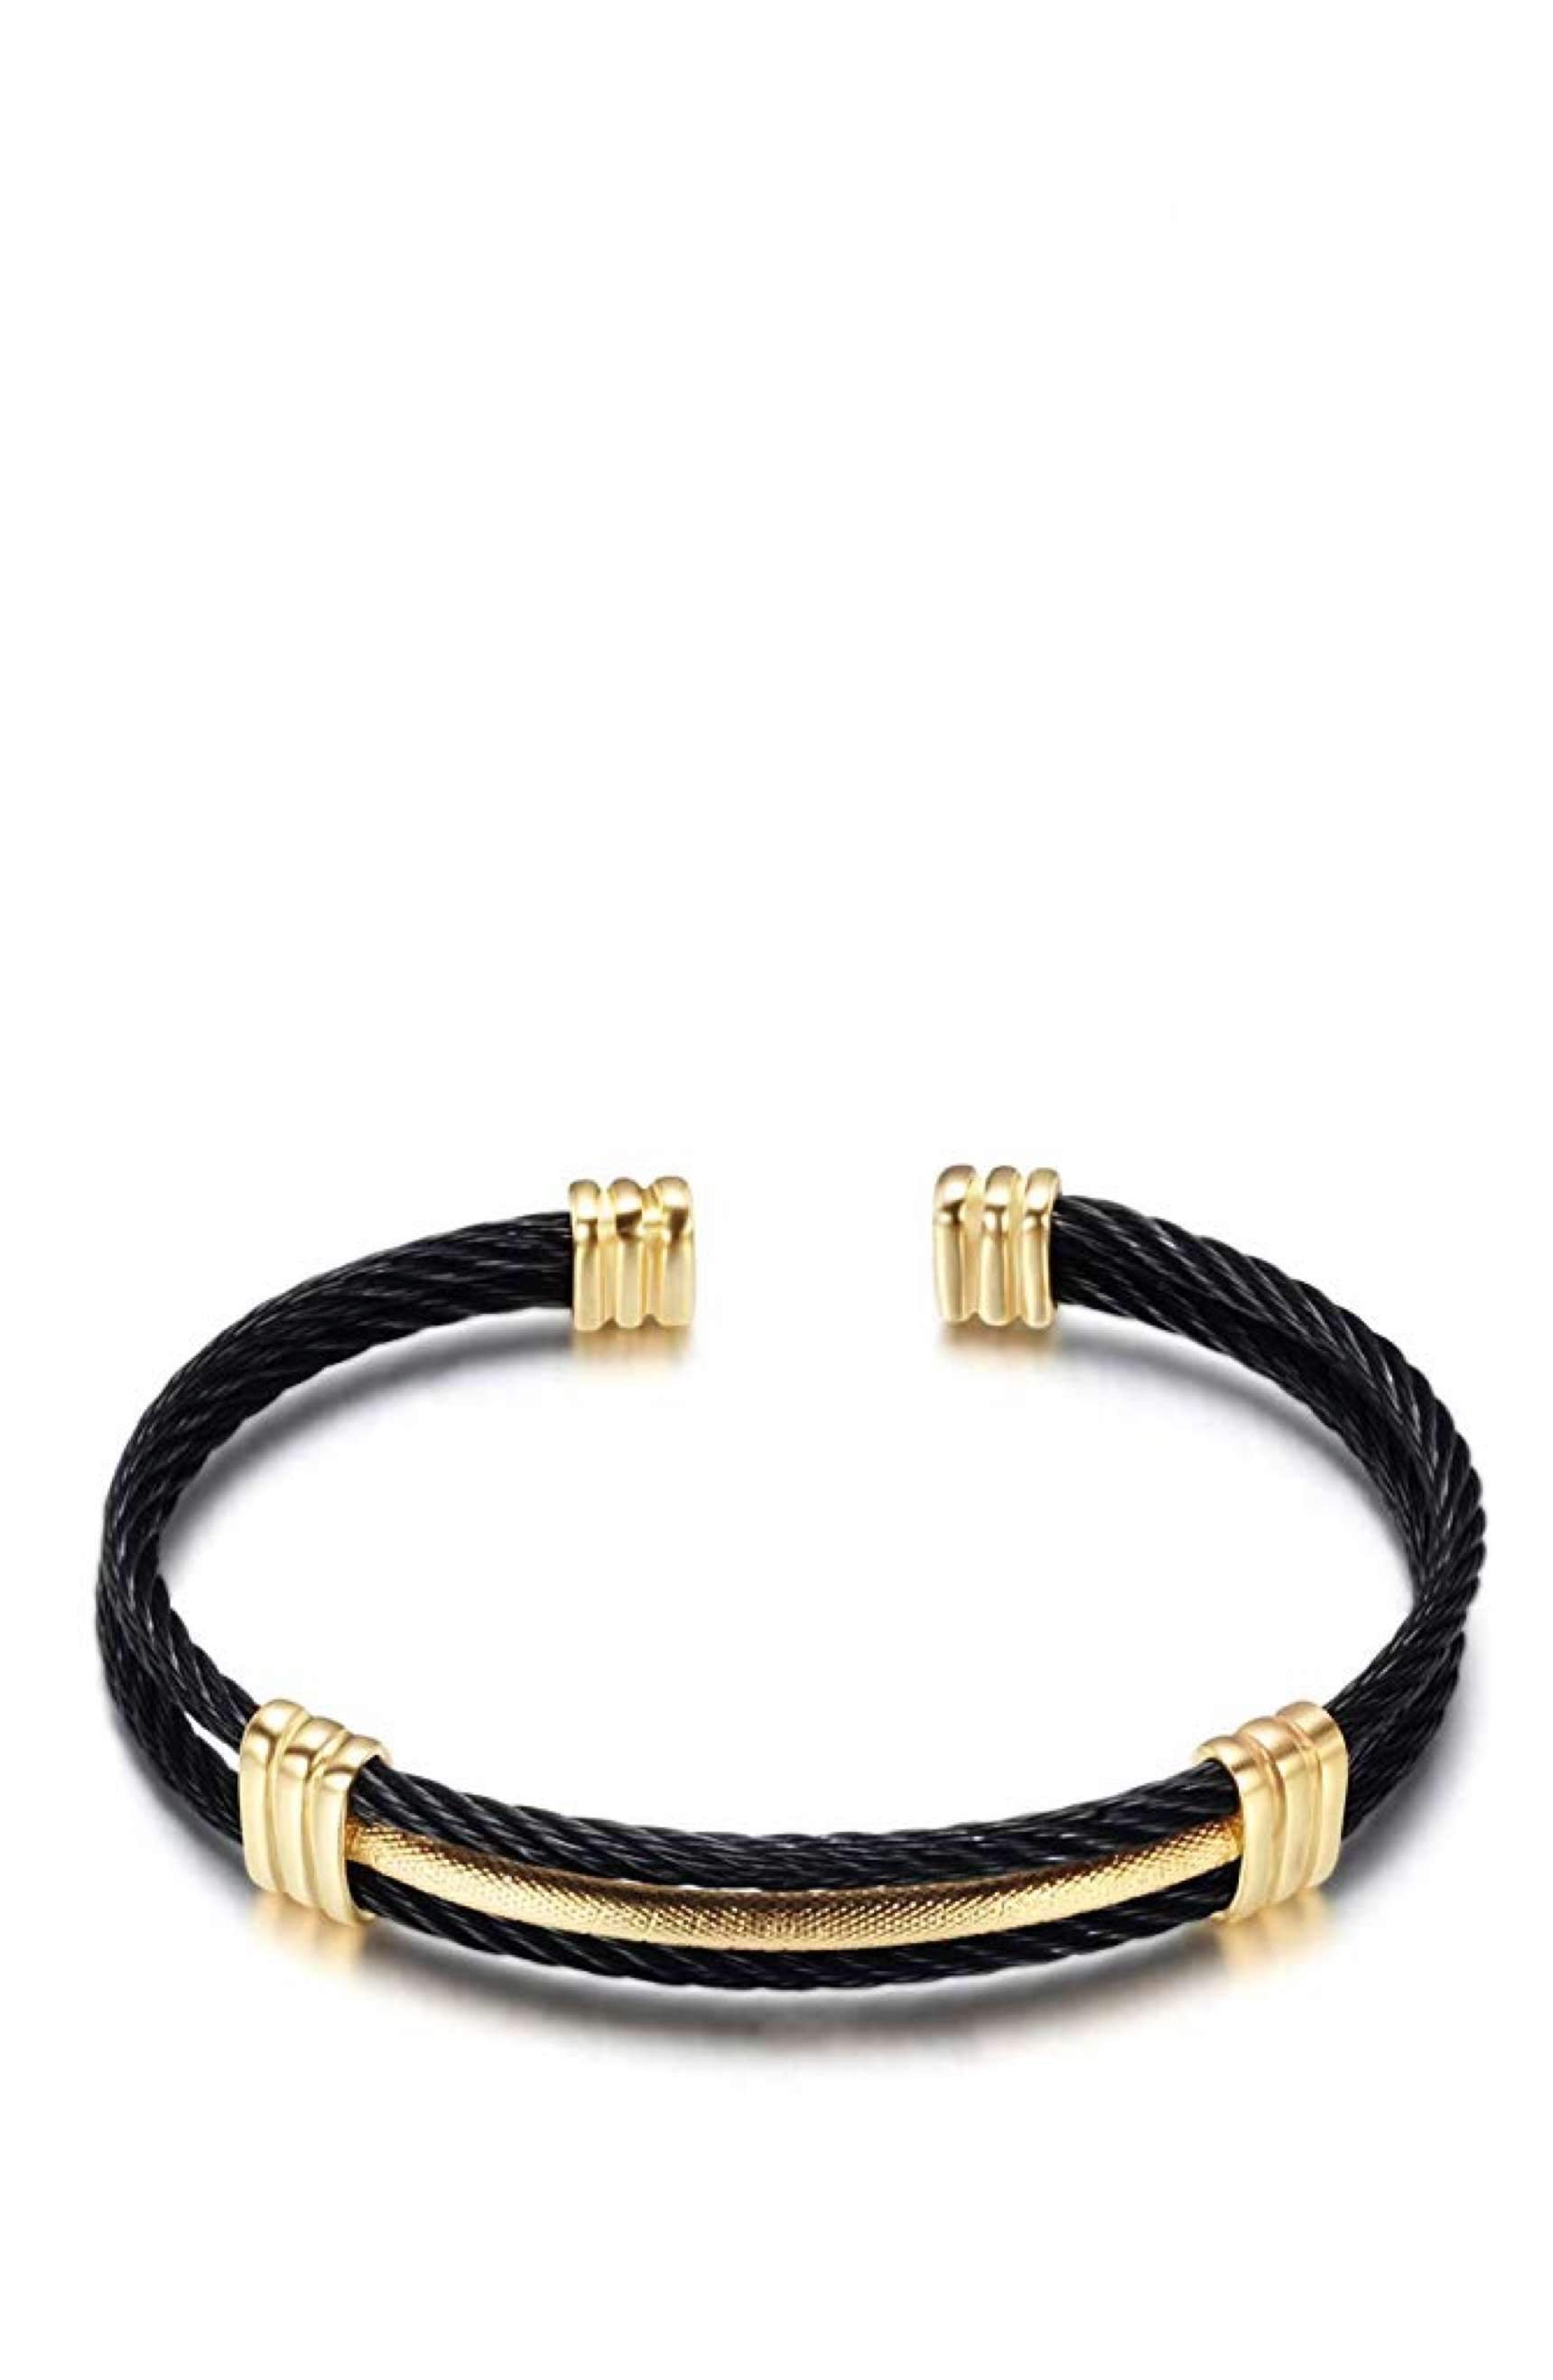 18K Gold & Black Cable Cuff Bangle